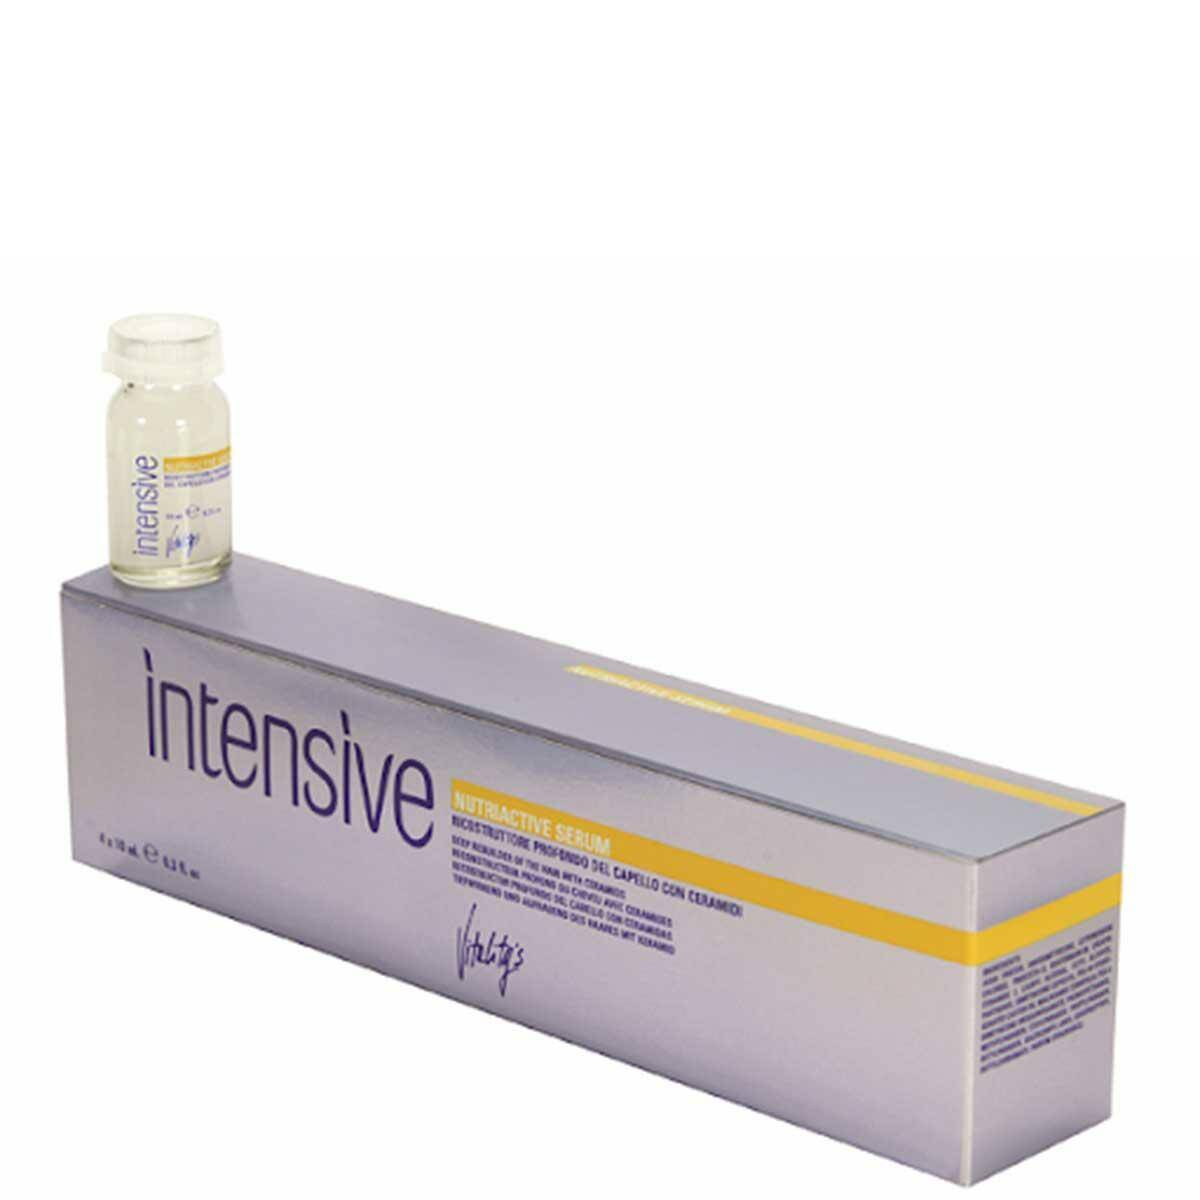 Szczegóły produktu: Vitalitys Intensive Nutriactive Serum, Ampułki głęboko regenerujące do włosów zniszczonych 4x10ml